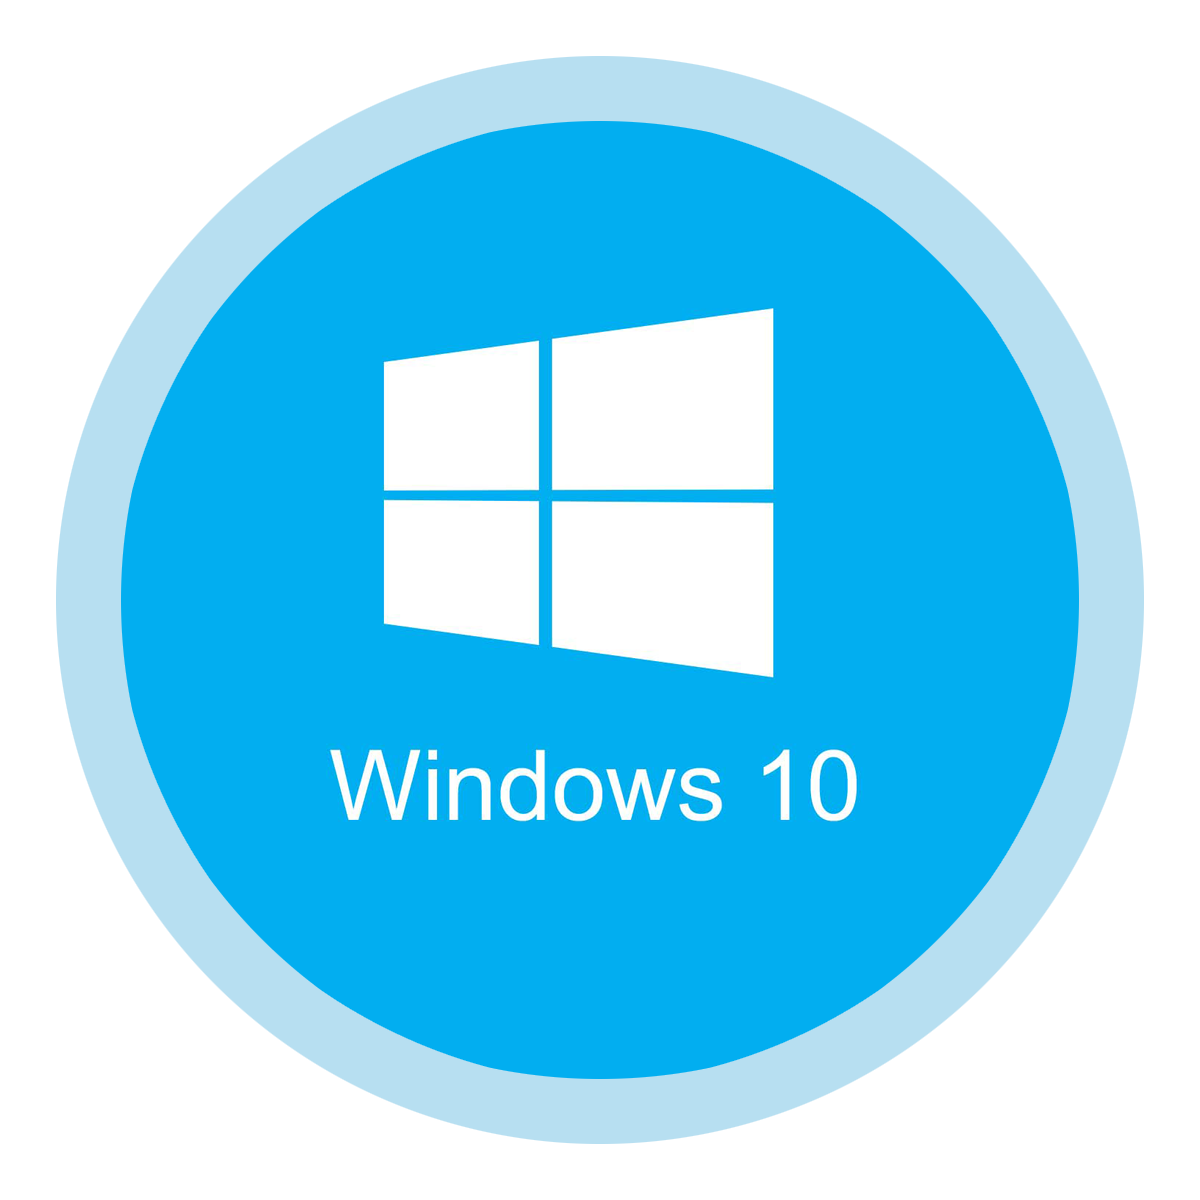 Windows Free Download Image PNG Image